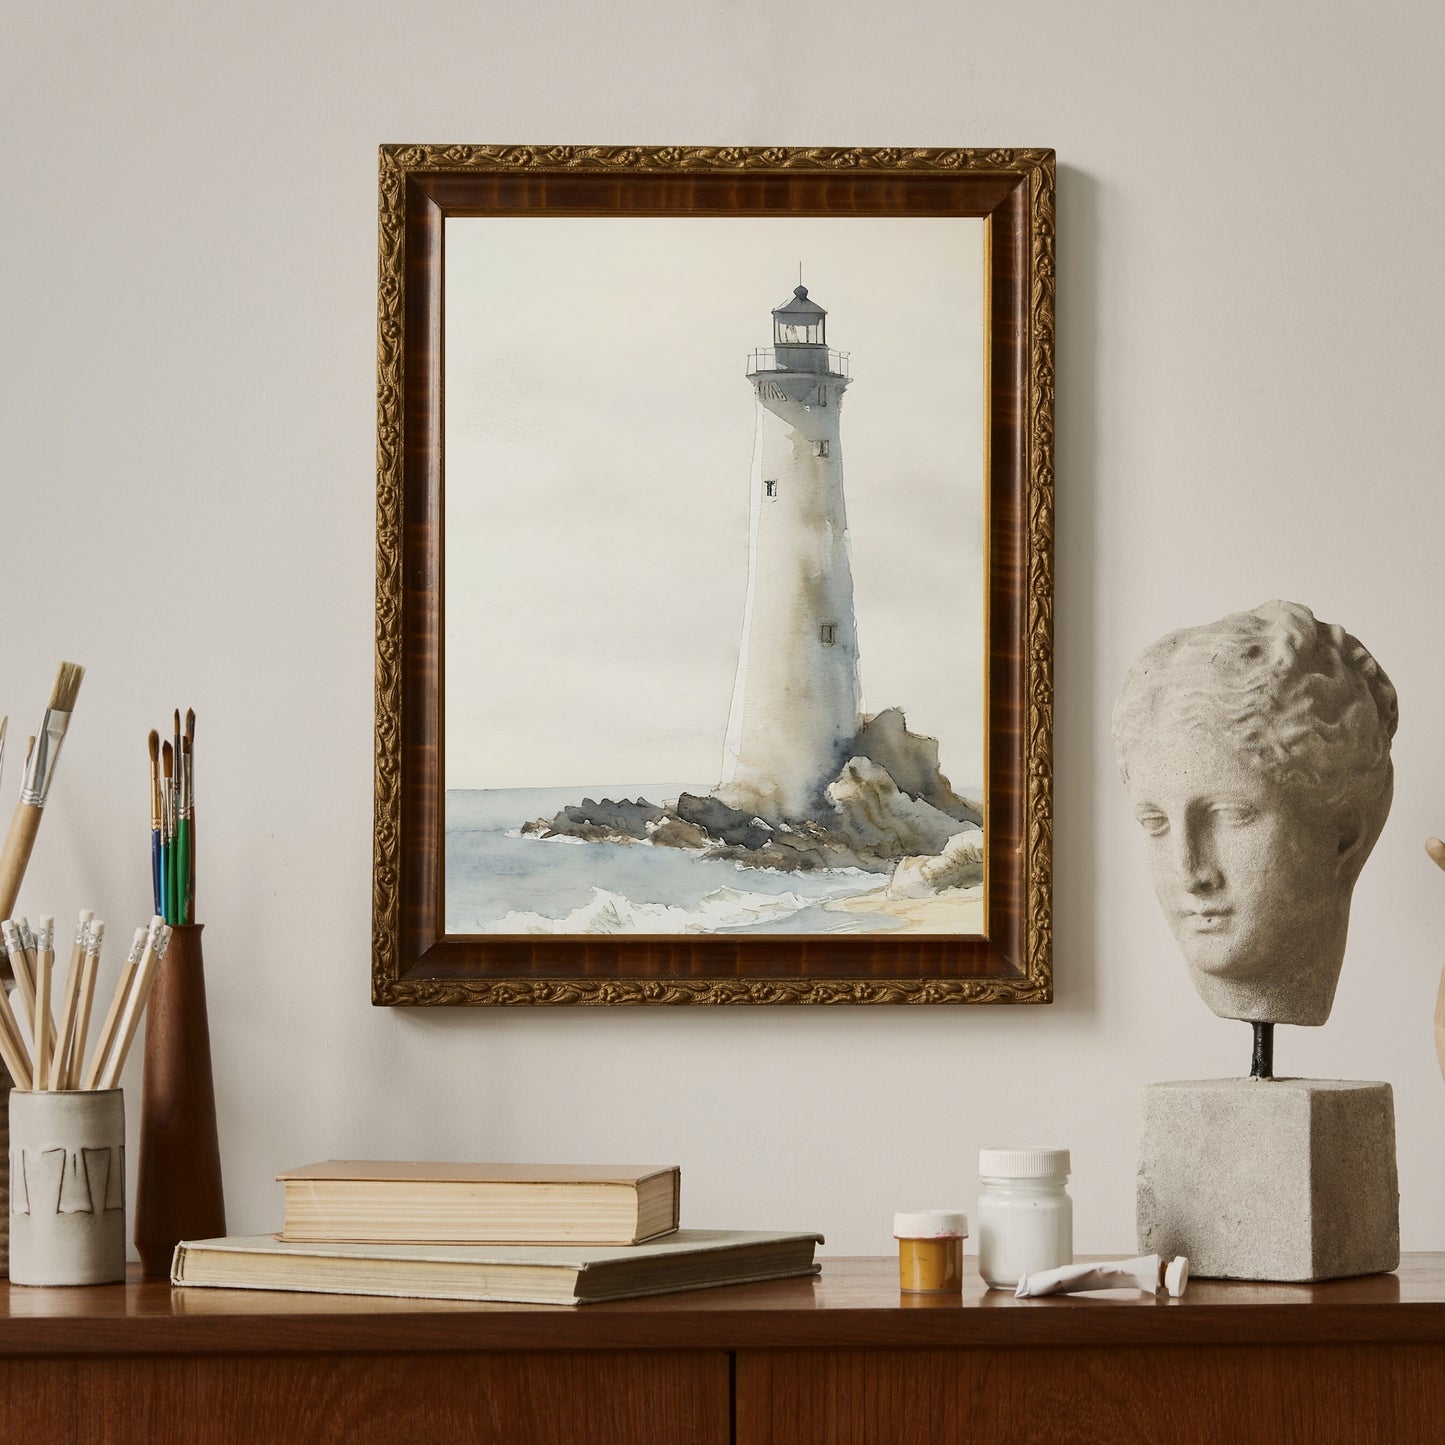 Leuchtturm-Druckpapier-Poster druckt Vintage-Kunst, Aquarellmalerei, nautische Malerei, Küstenkunst, Bauernhauskunst